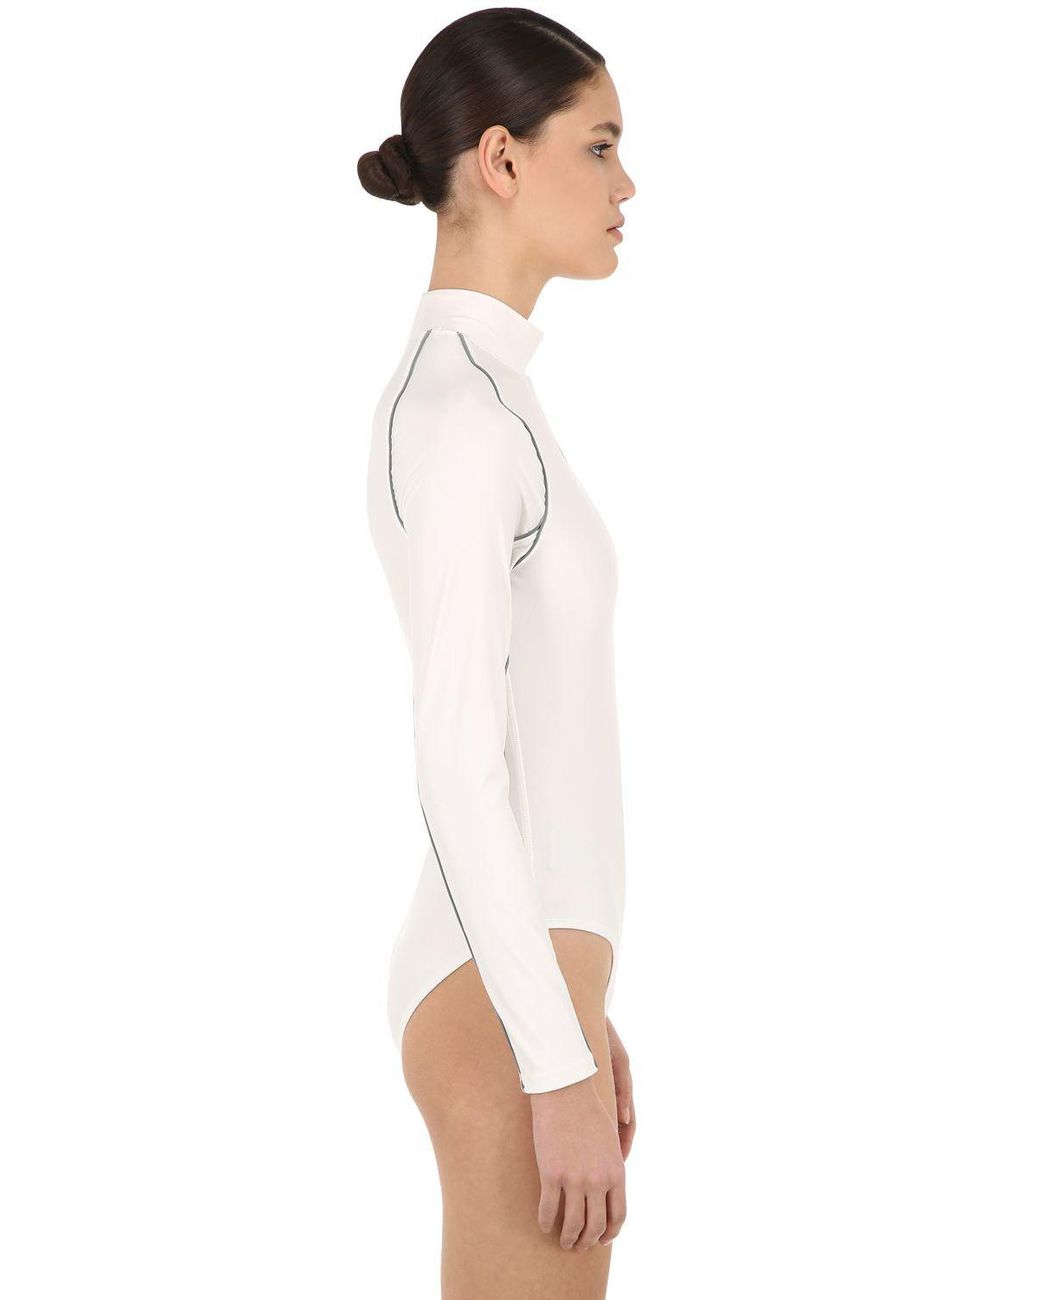 Nike Nrg Ca Ambush Bodysuit in White | Lyst Australia